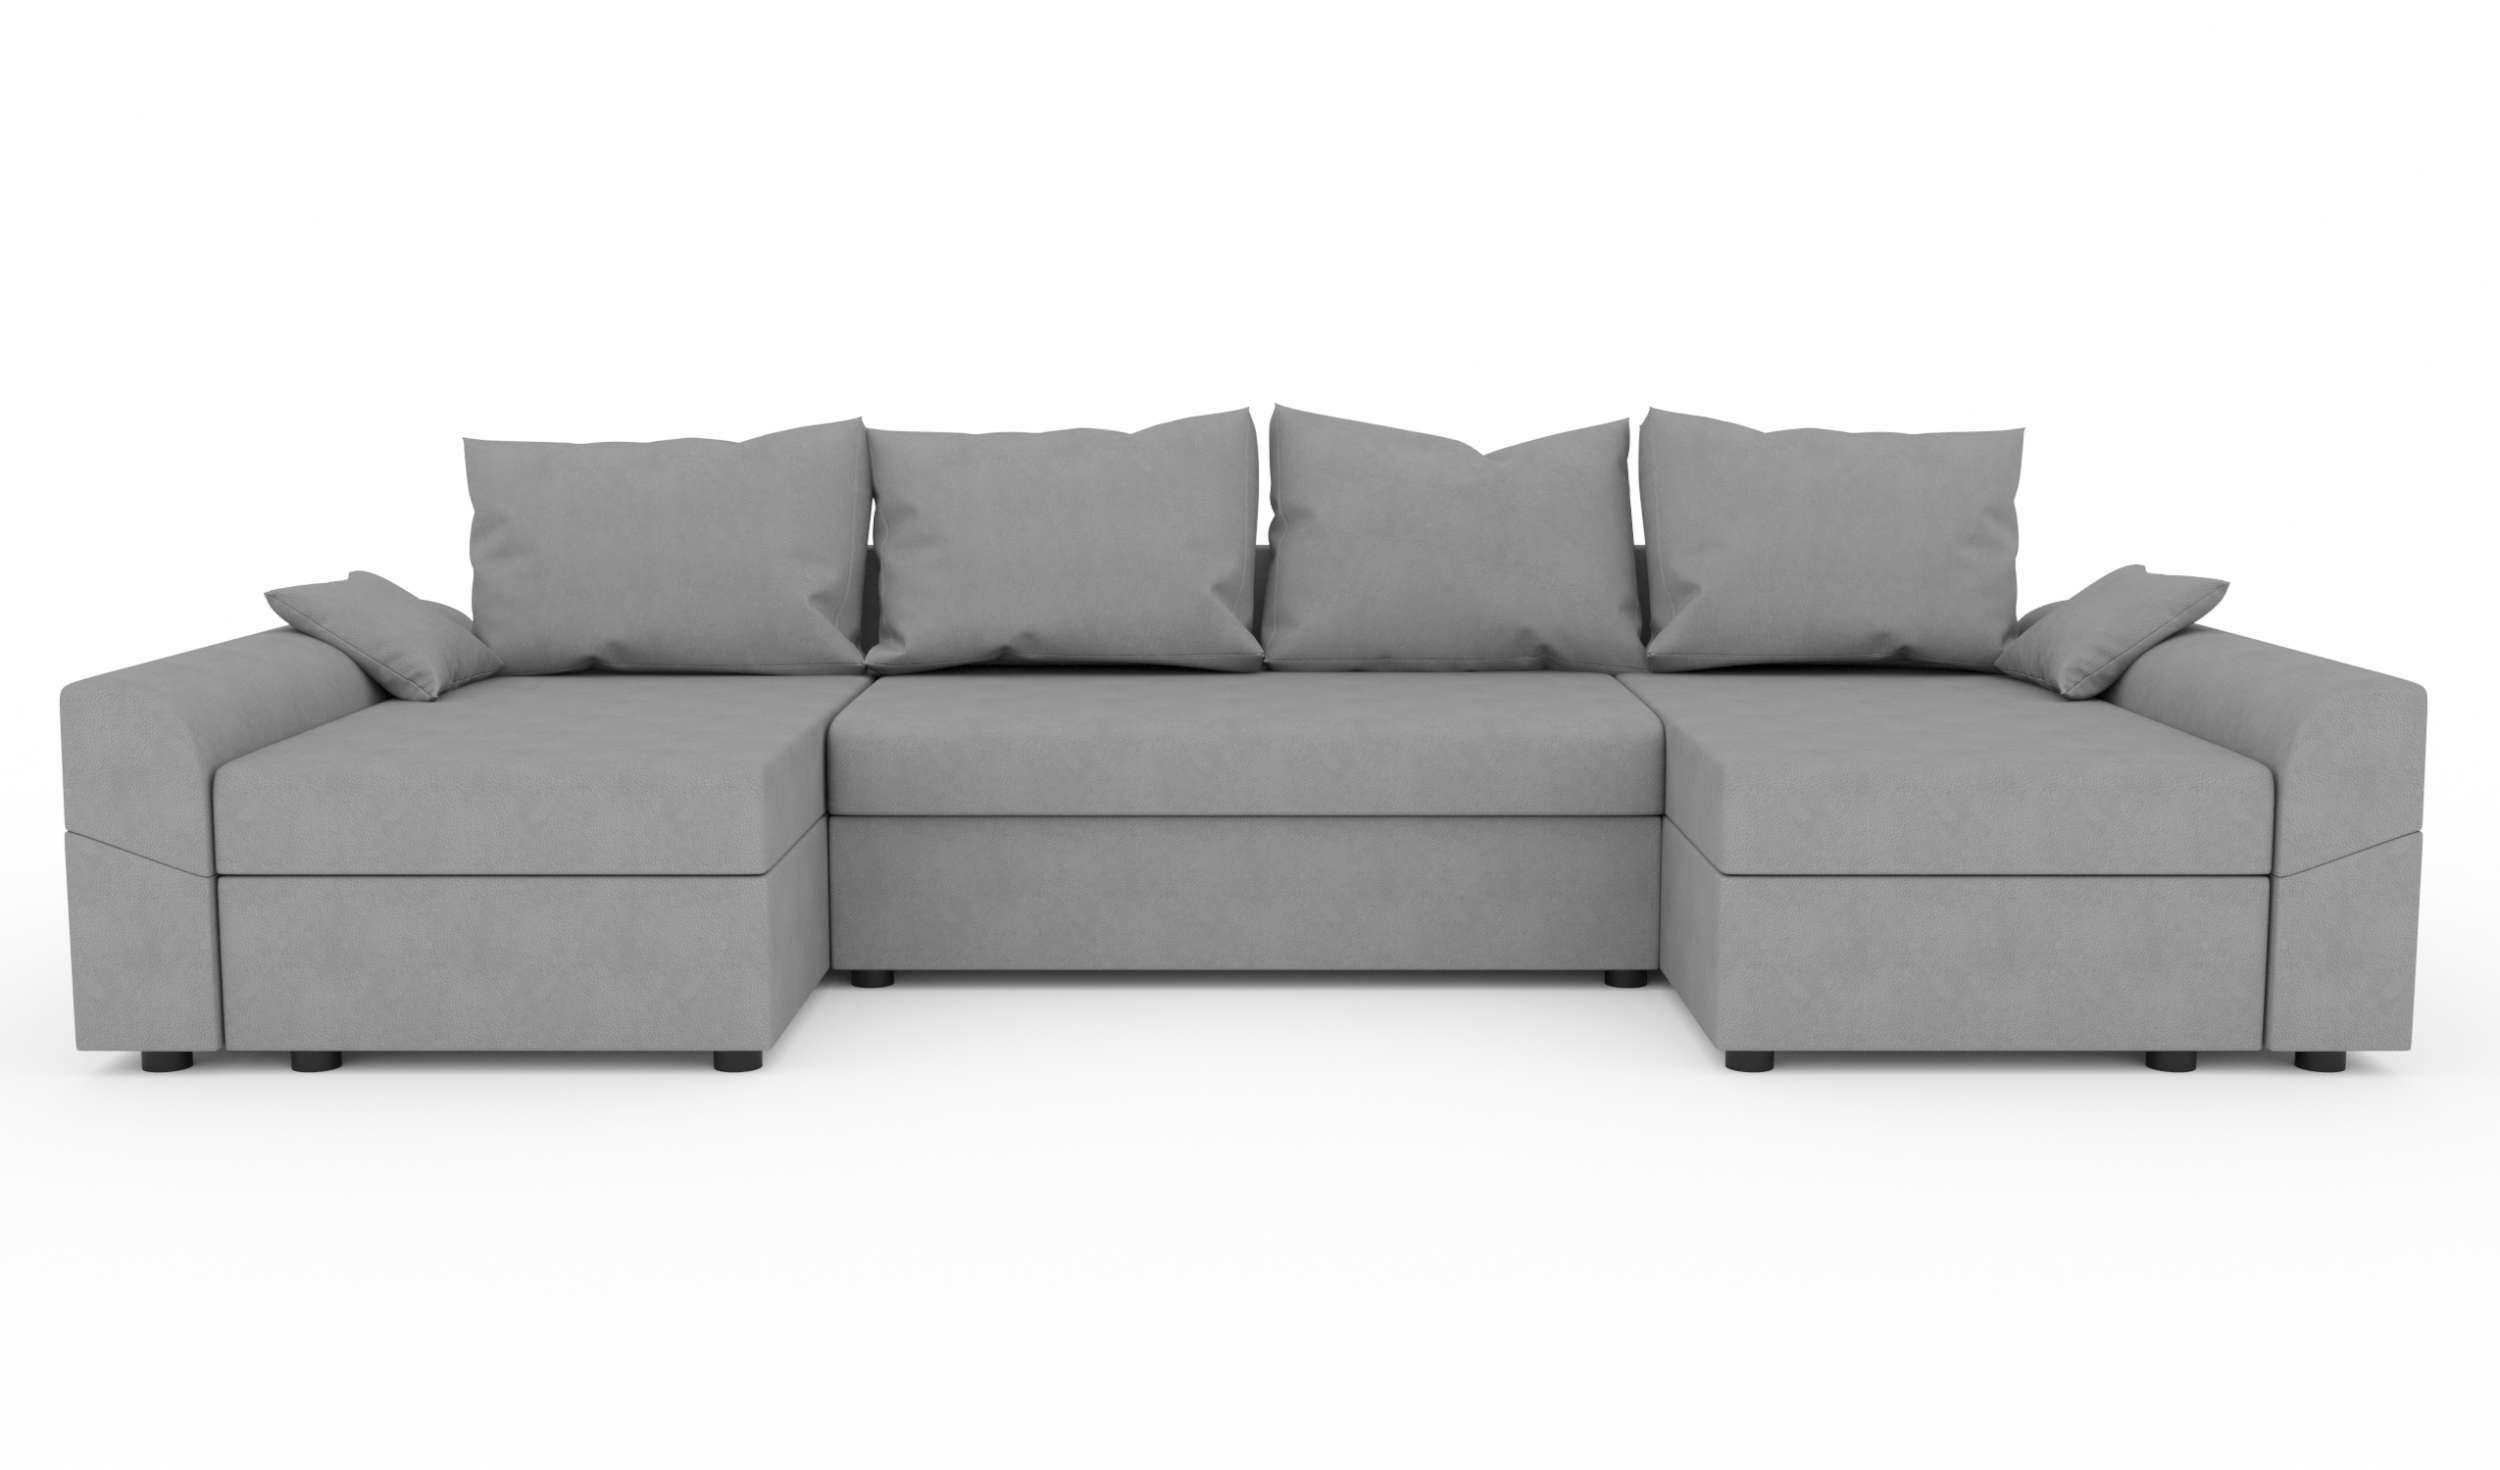 Wohnlandschaft Bettkasten, Sitzkomfort, Sofa, Eckcouch, Carolina, mit U-Form, Design Bettfunktion, Stylefy Modern mit